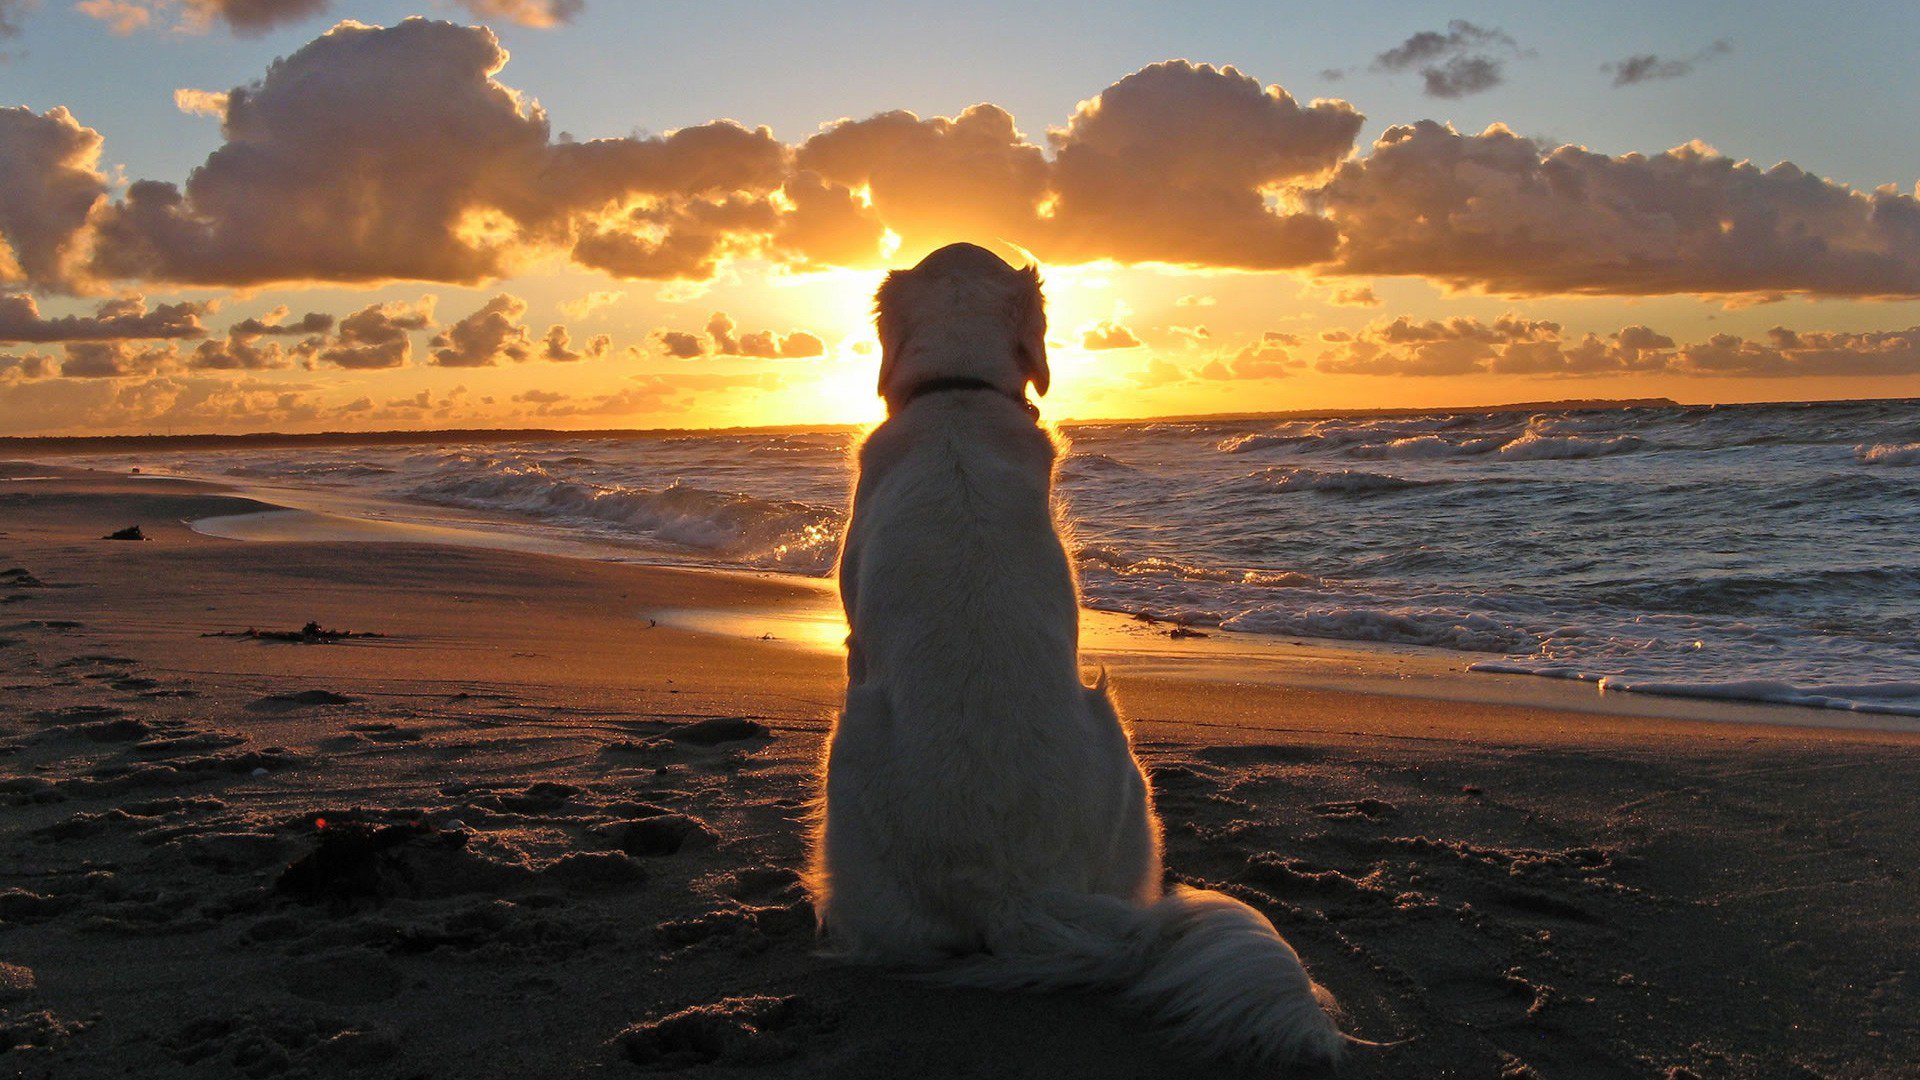 Dog On Beach At Sunset HD Wallpaper FullHDwpp Full